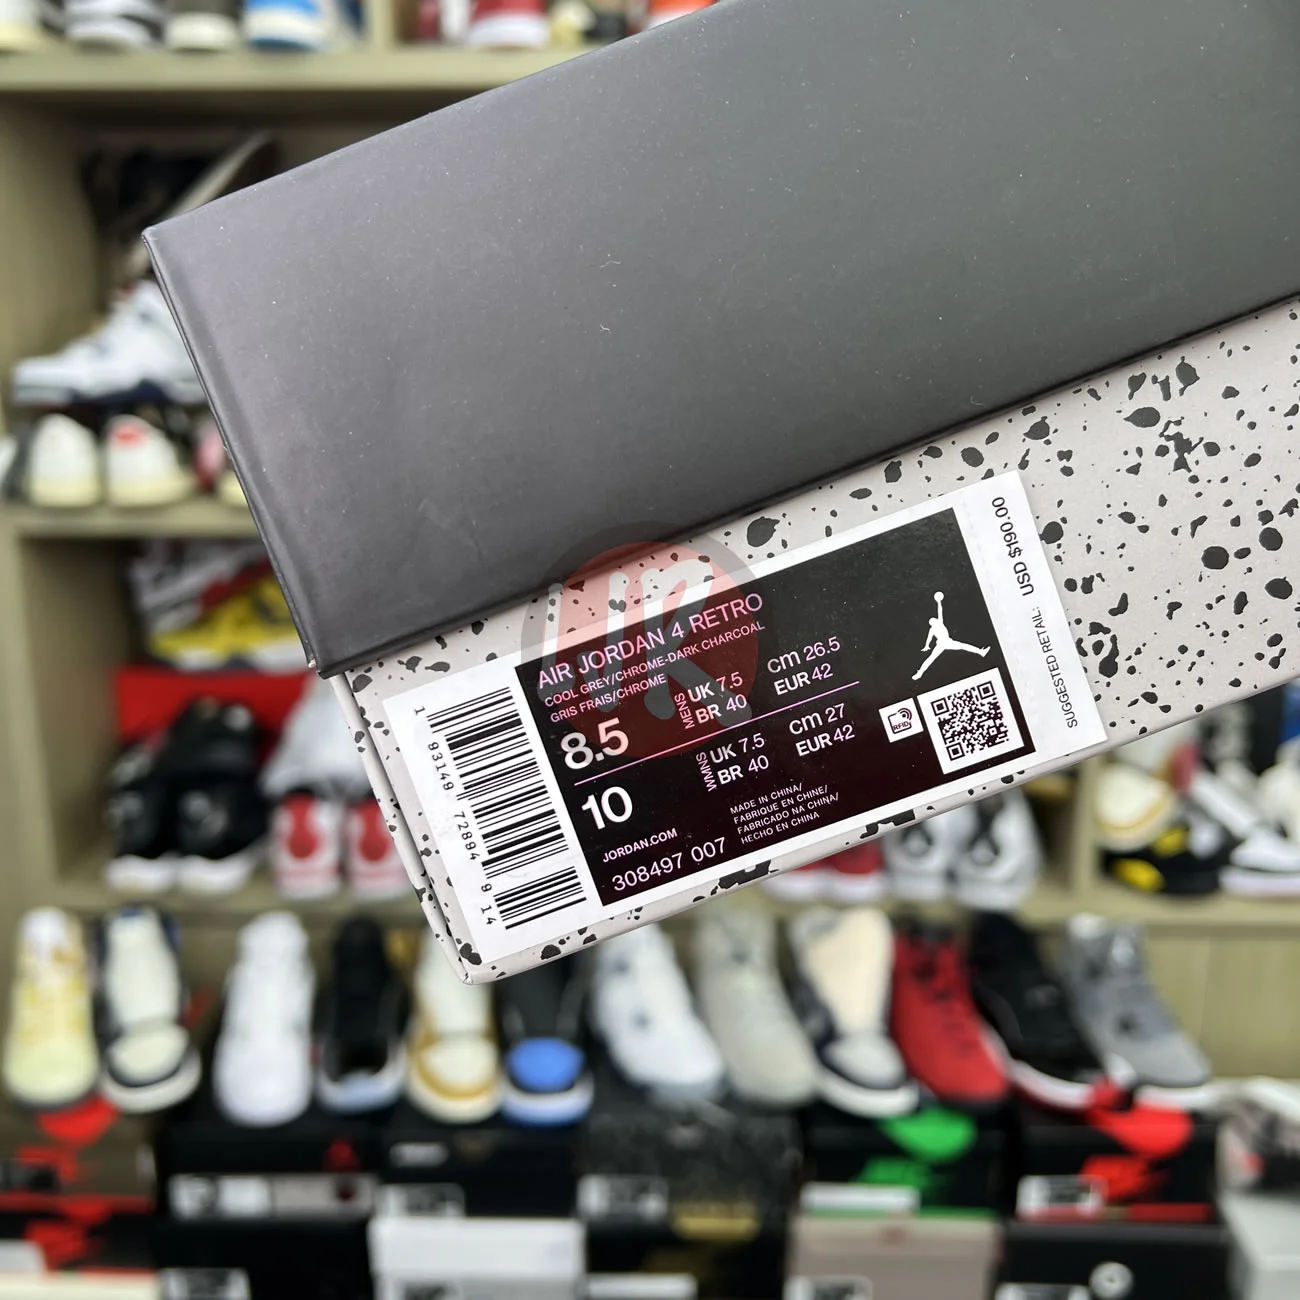 Air Jordan 4 Retro Cool Grey 2019 308497 007 Ljr Sneakers (25) - bc-ljr.com